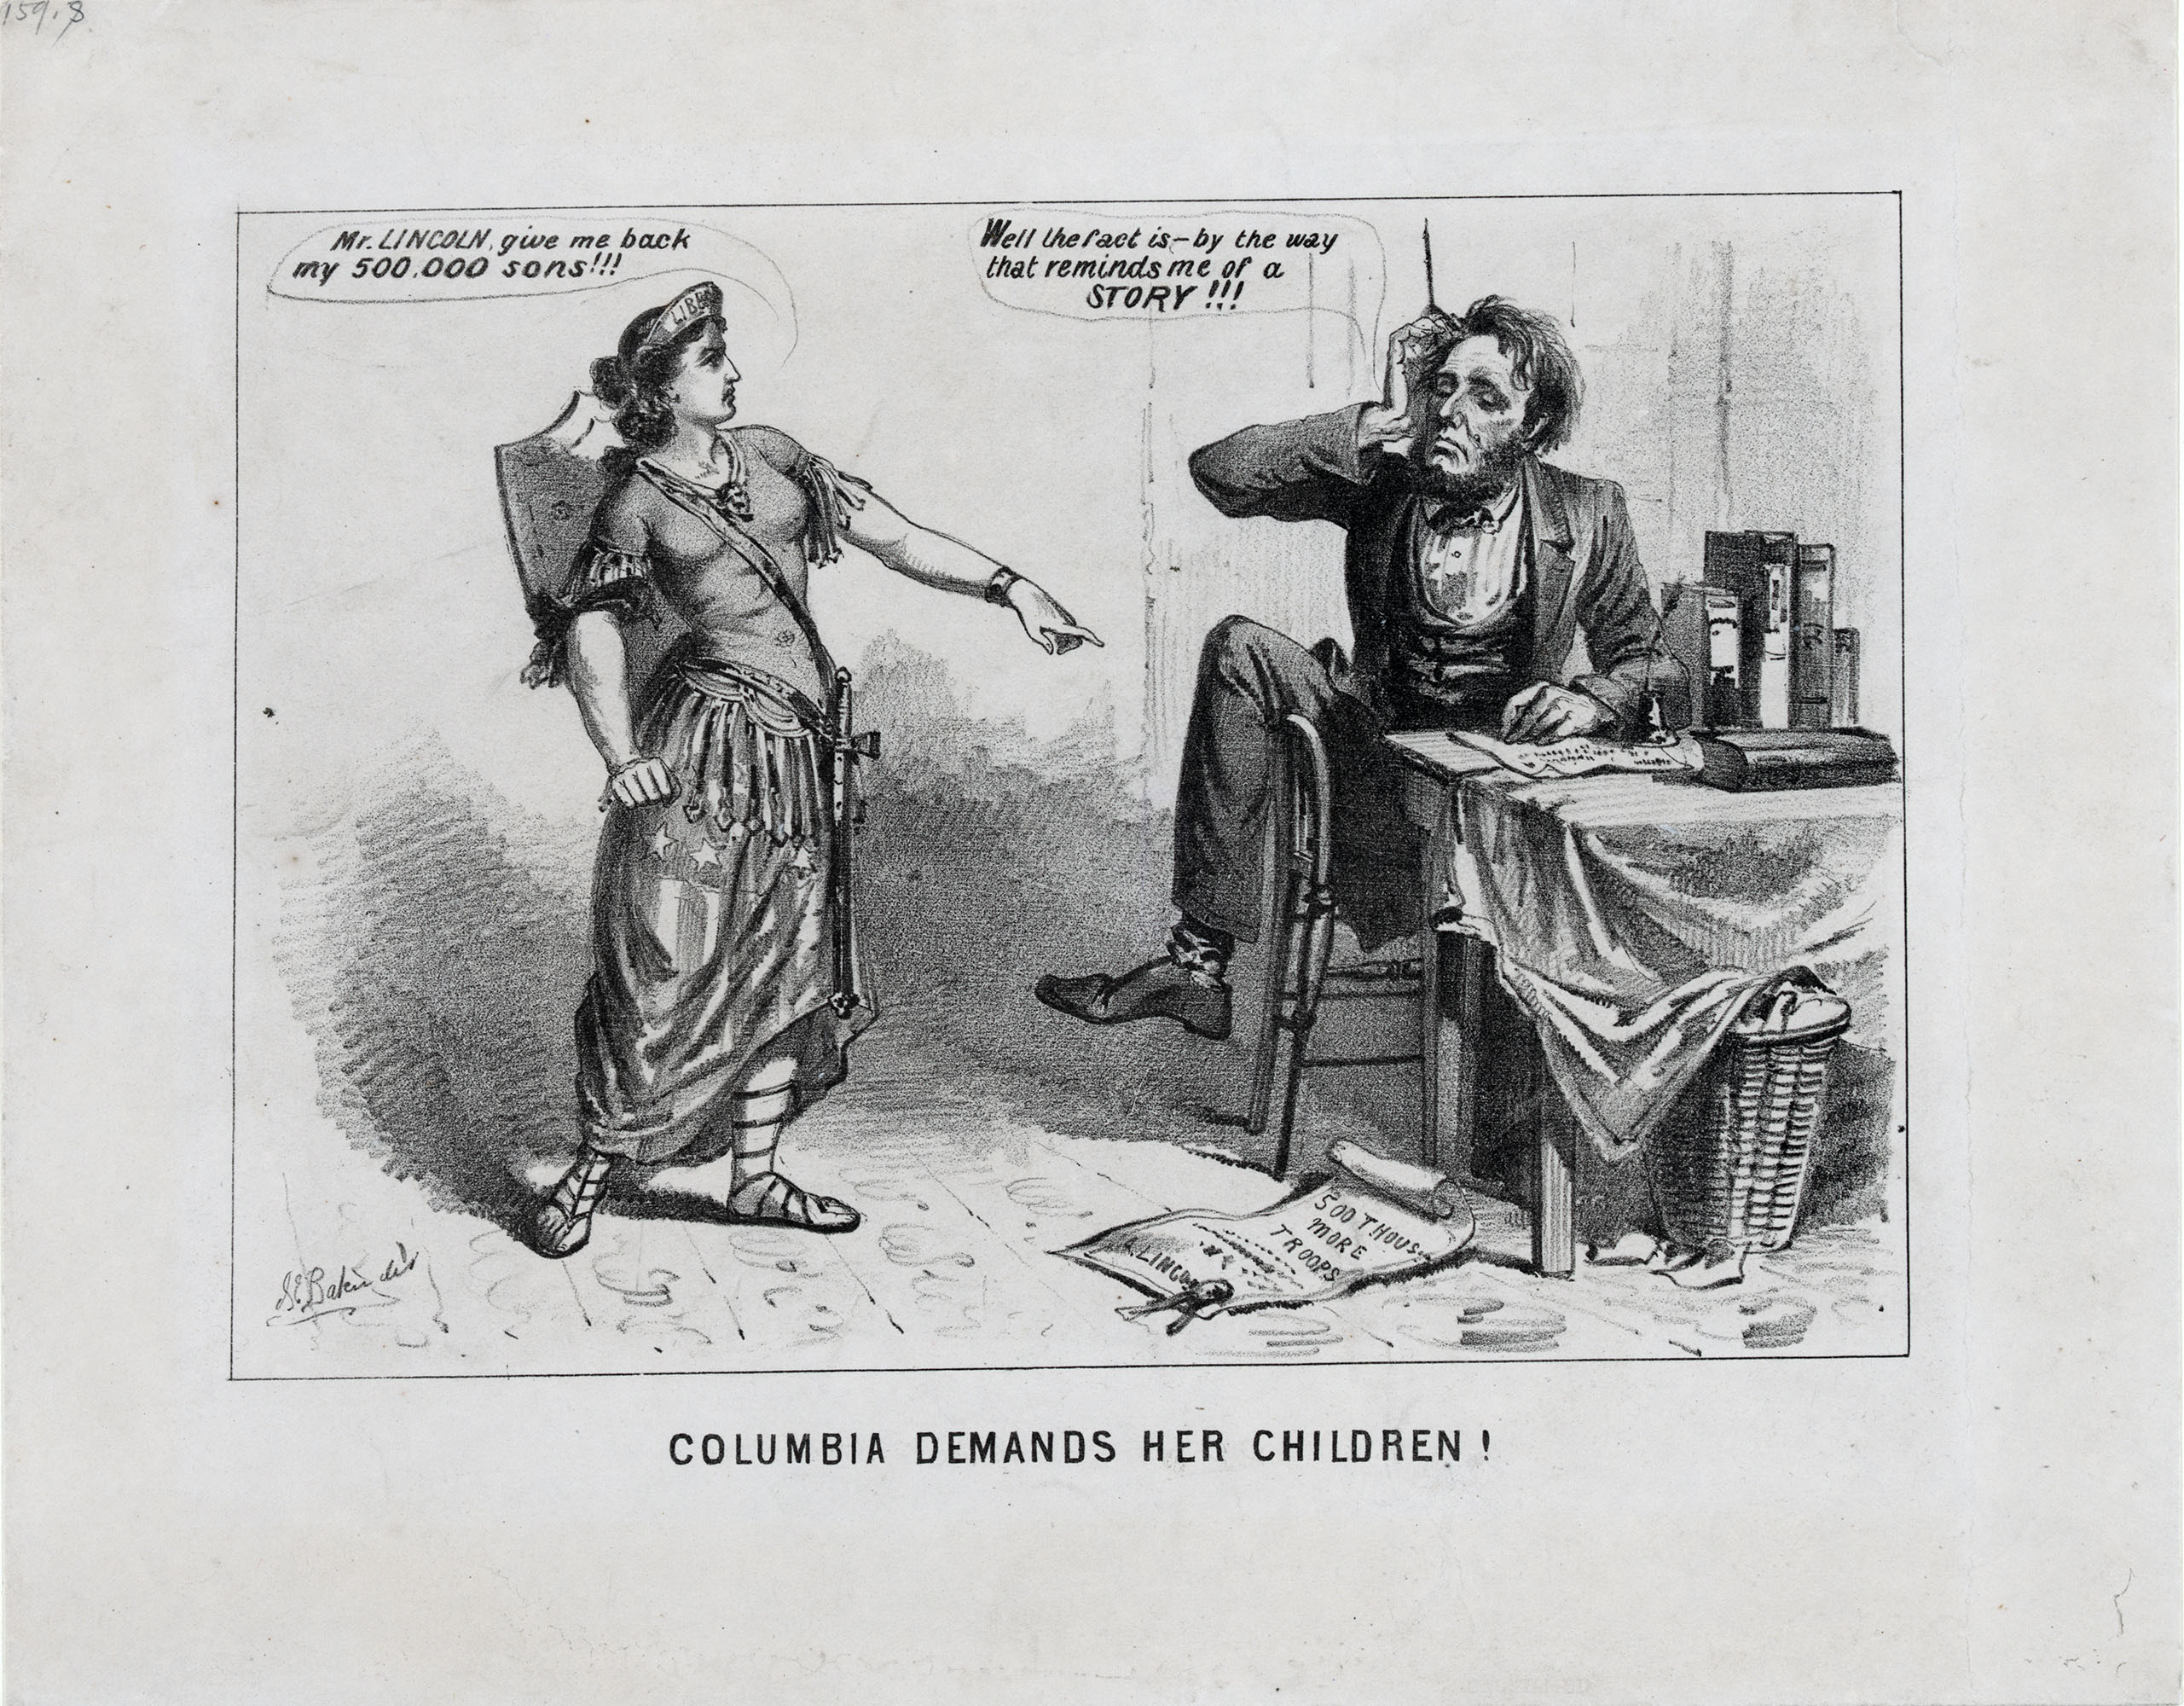 Political cartoon critiquing Lincoln’s handling of the war. Joseph E. Baker, Columbia Demands Her Children! Boston, 1864, lithograph (Library of Congress)